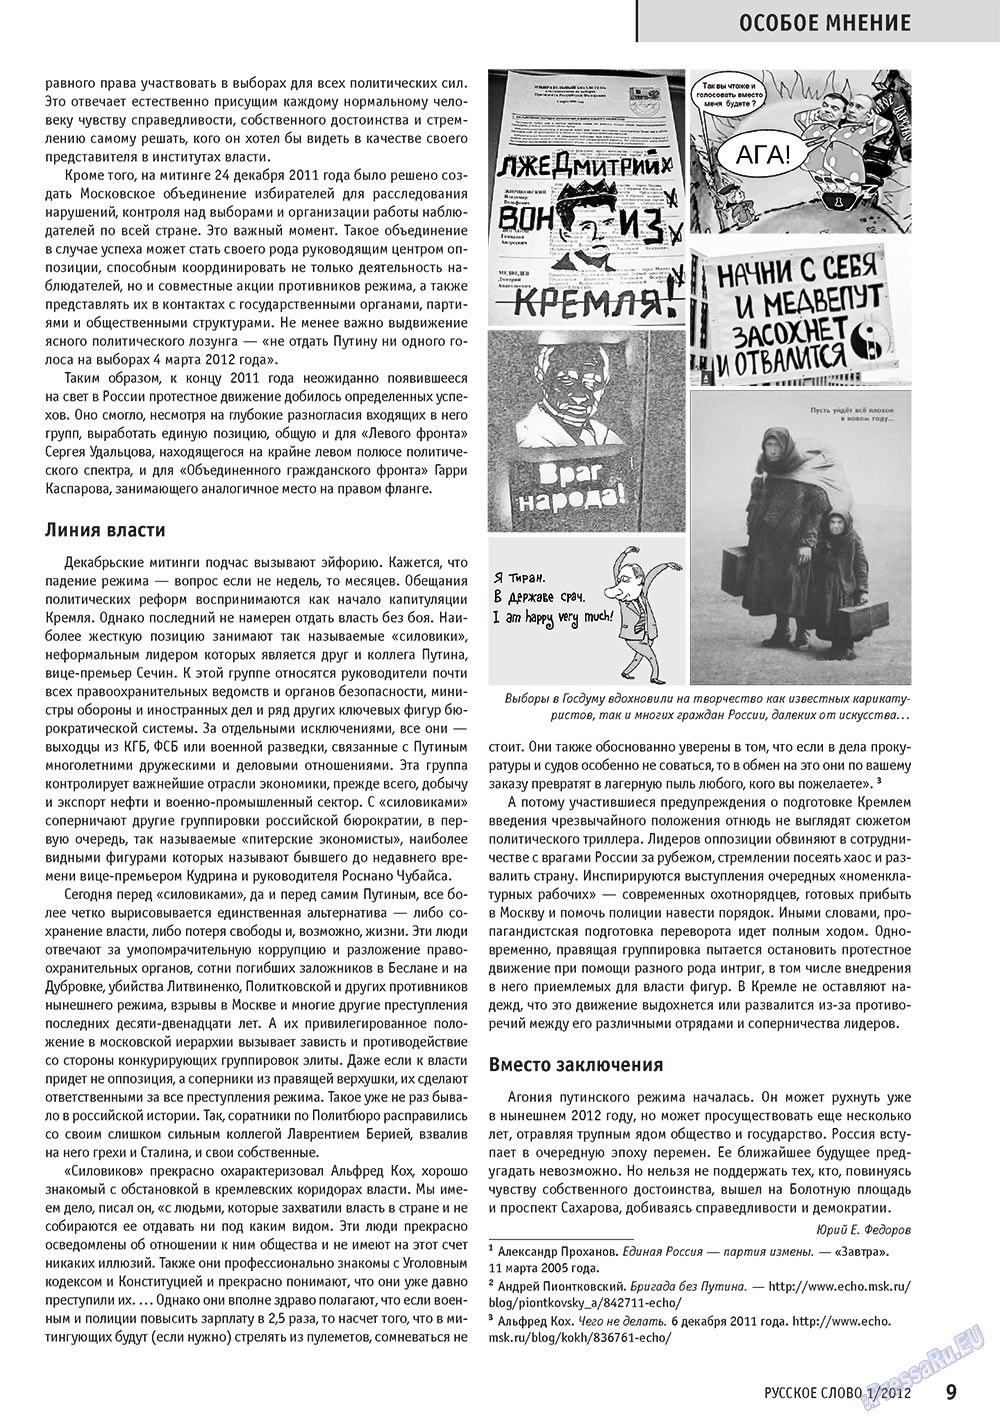 Русское слово, журнал. 2012 №1 стр.11